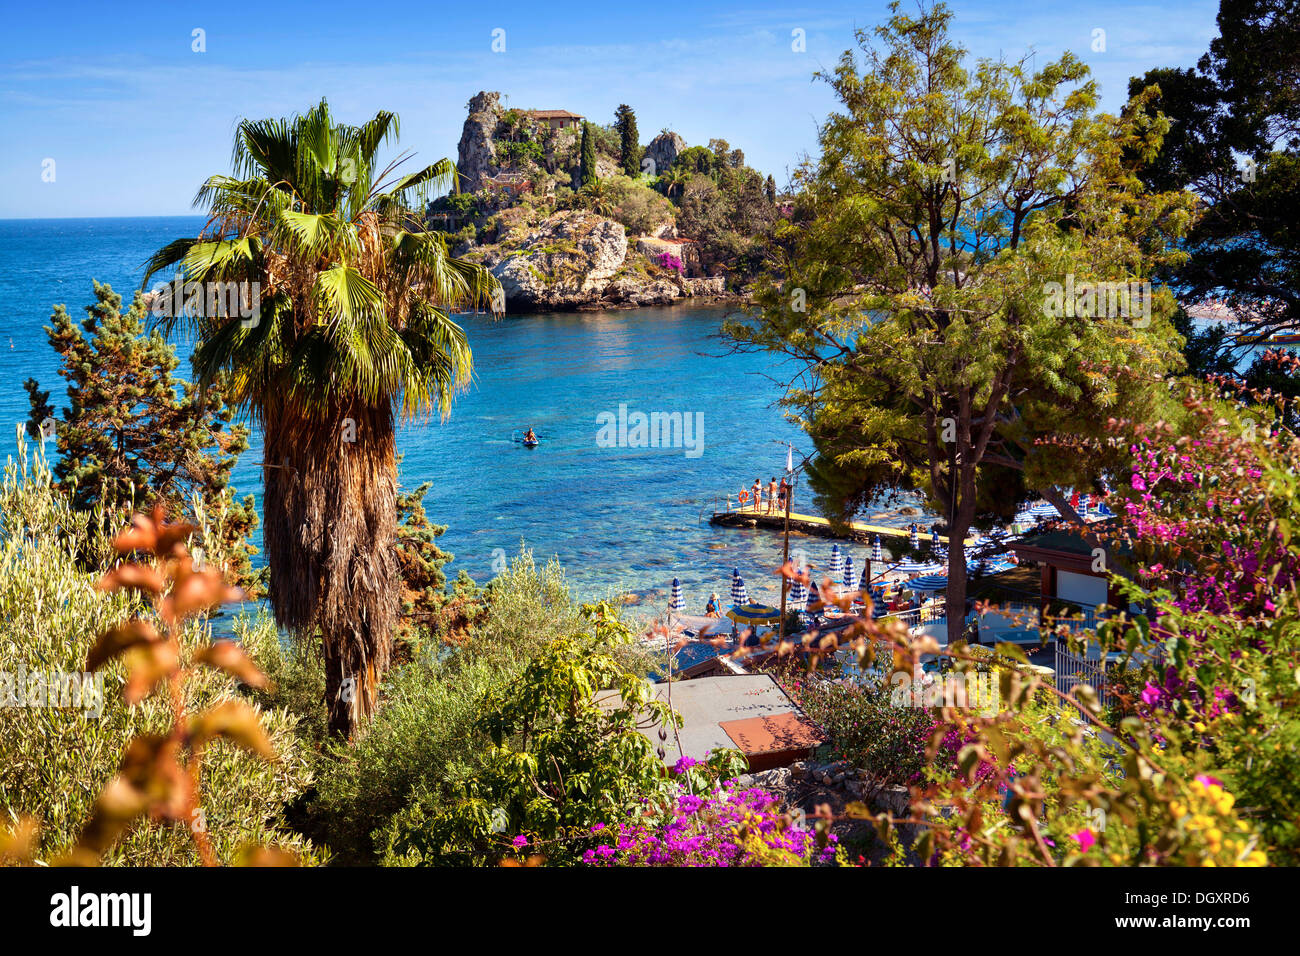 Isola Bella, Taormina, Sicily, Italy Stock Photo